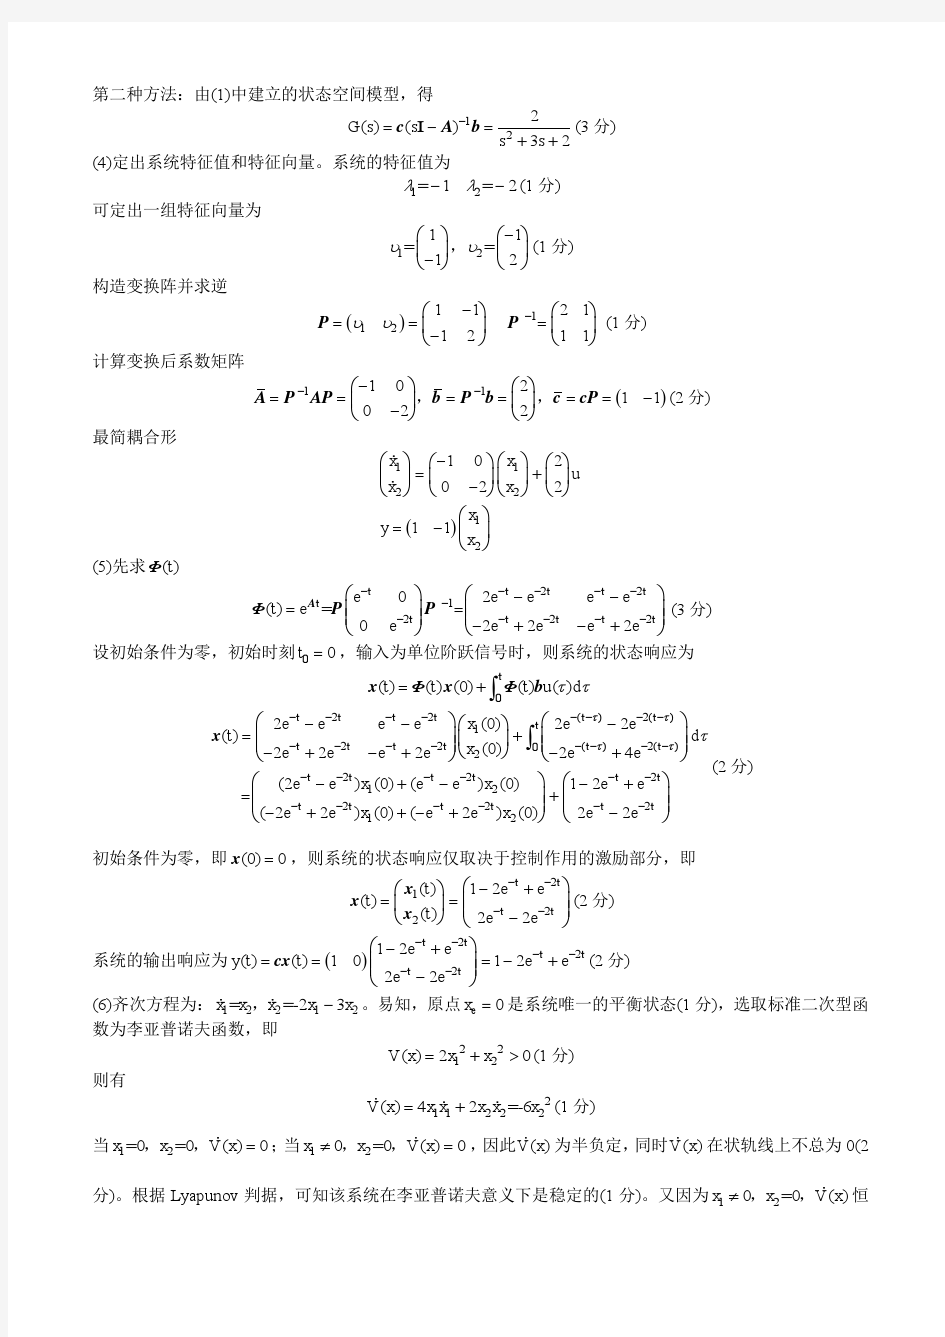 广西大学现代控制理论期末考试题库之计算题(含答案)